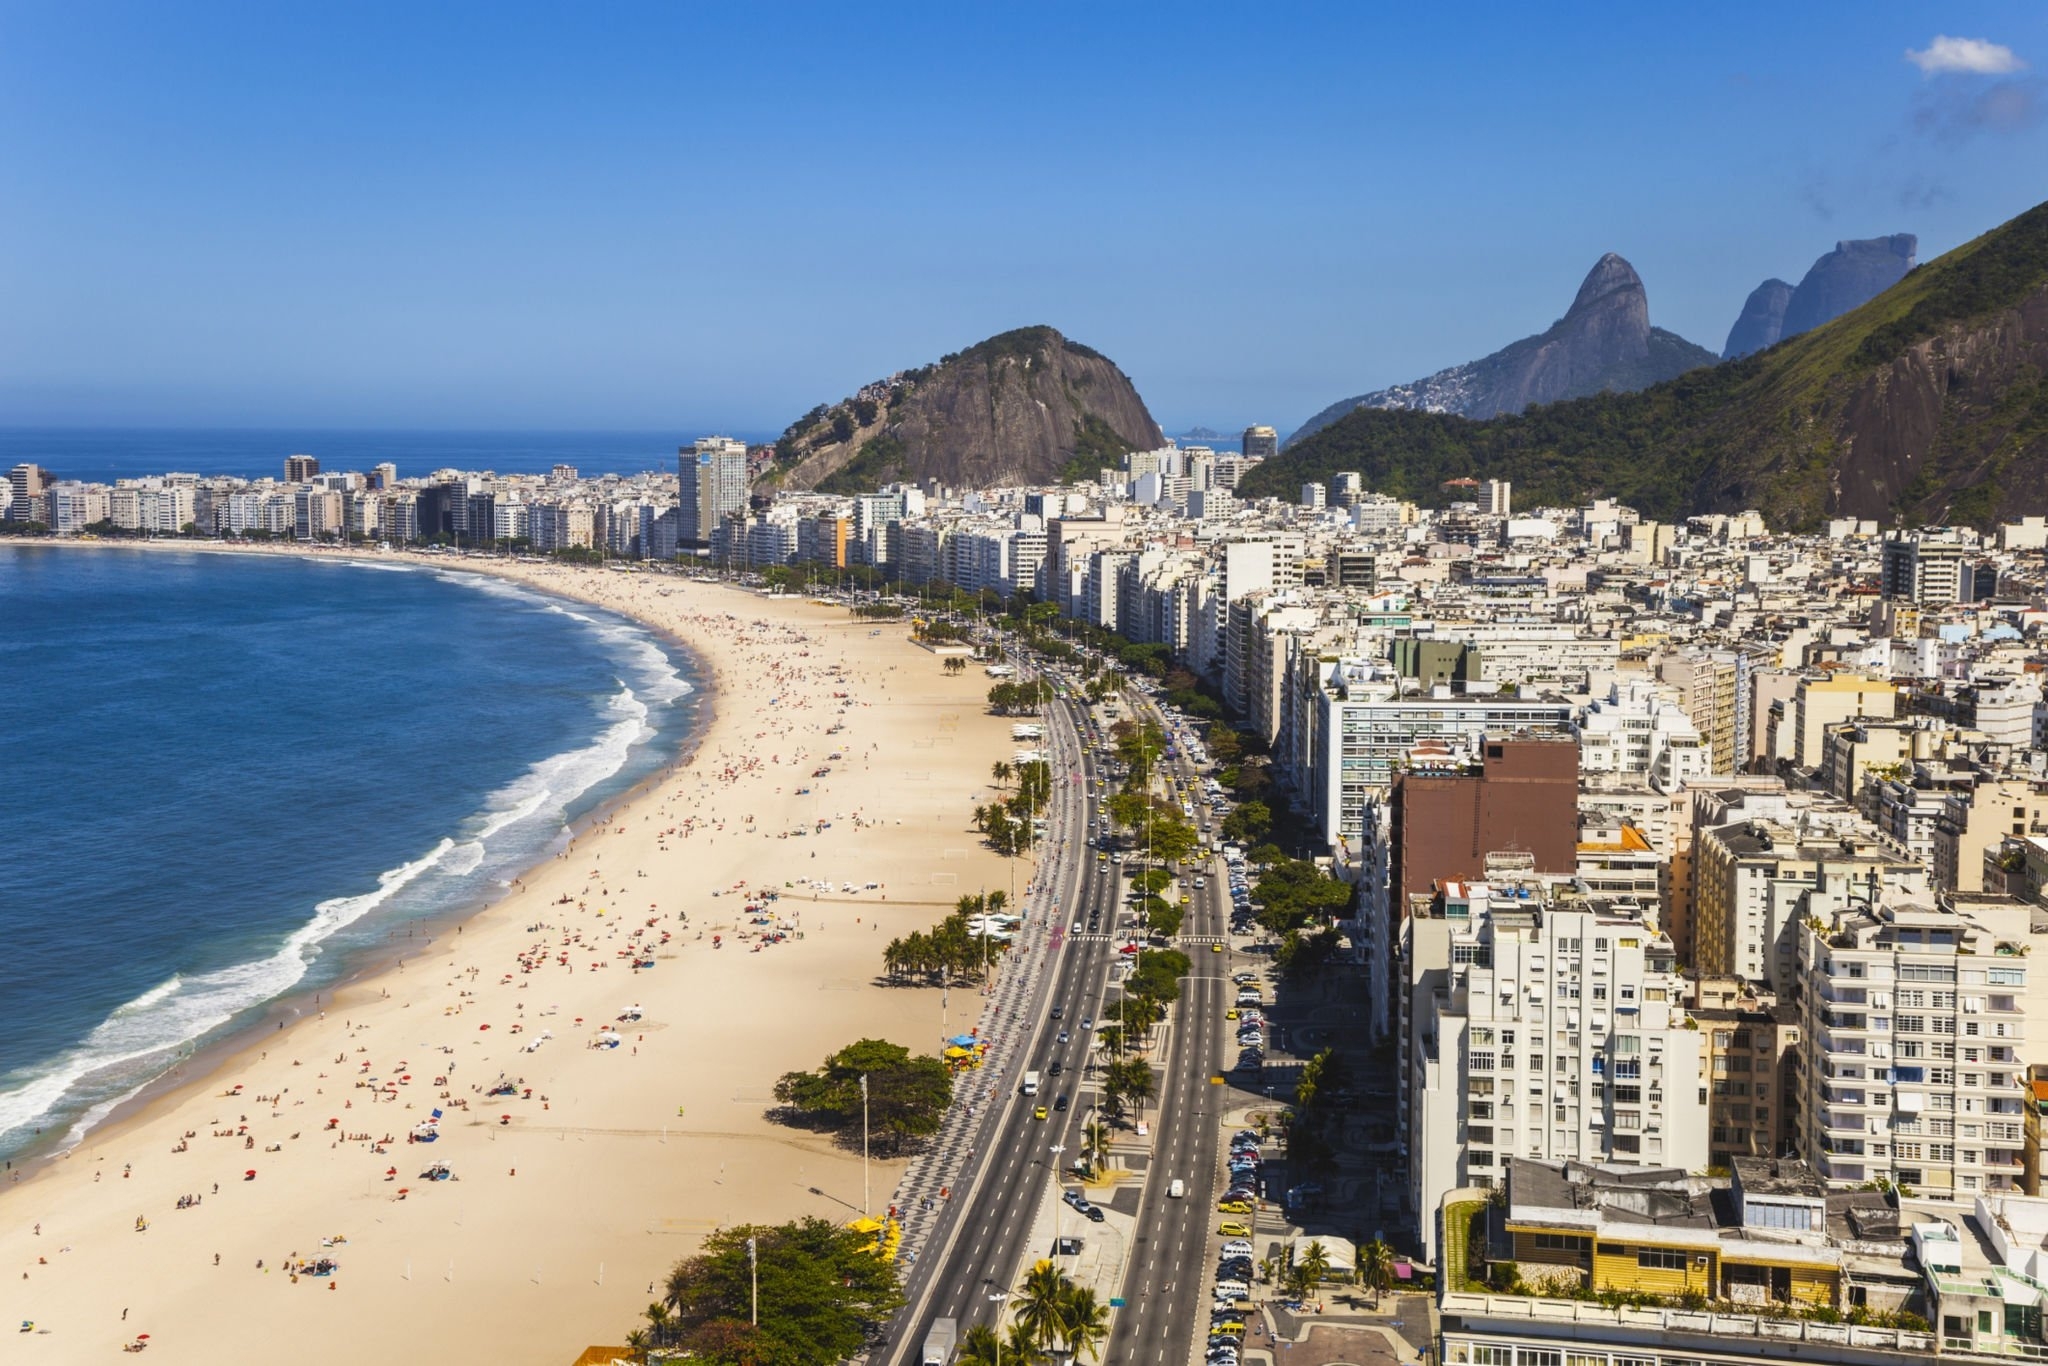 Réveillon no Rio de Janeiro: setor hoteleiro teve 98% de ocupação na noite da virada | Copacabana | Conexão123